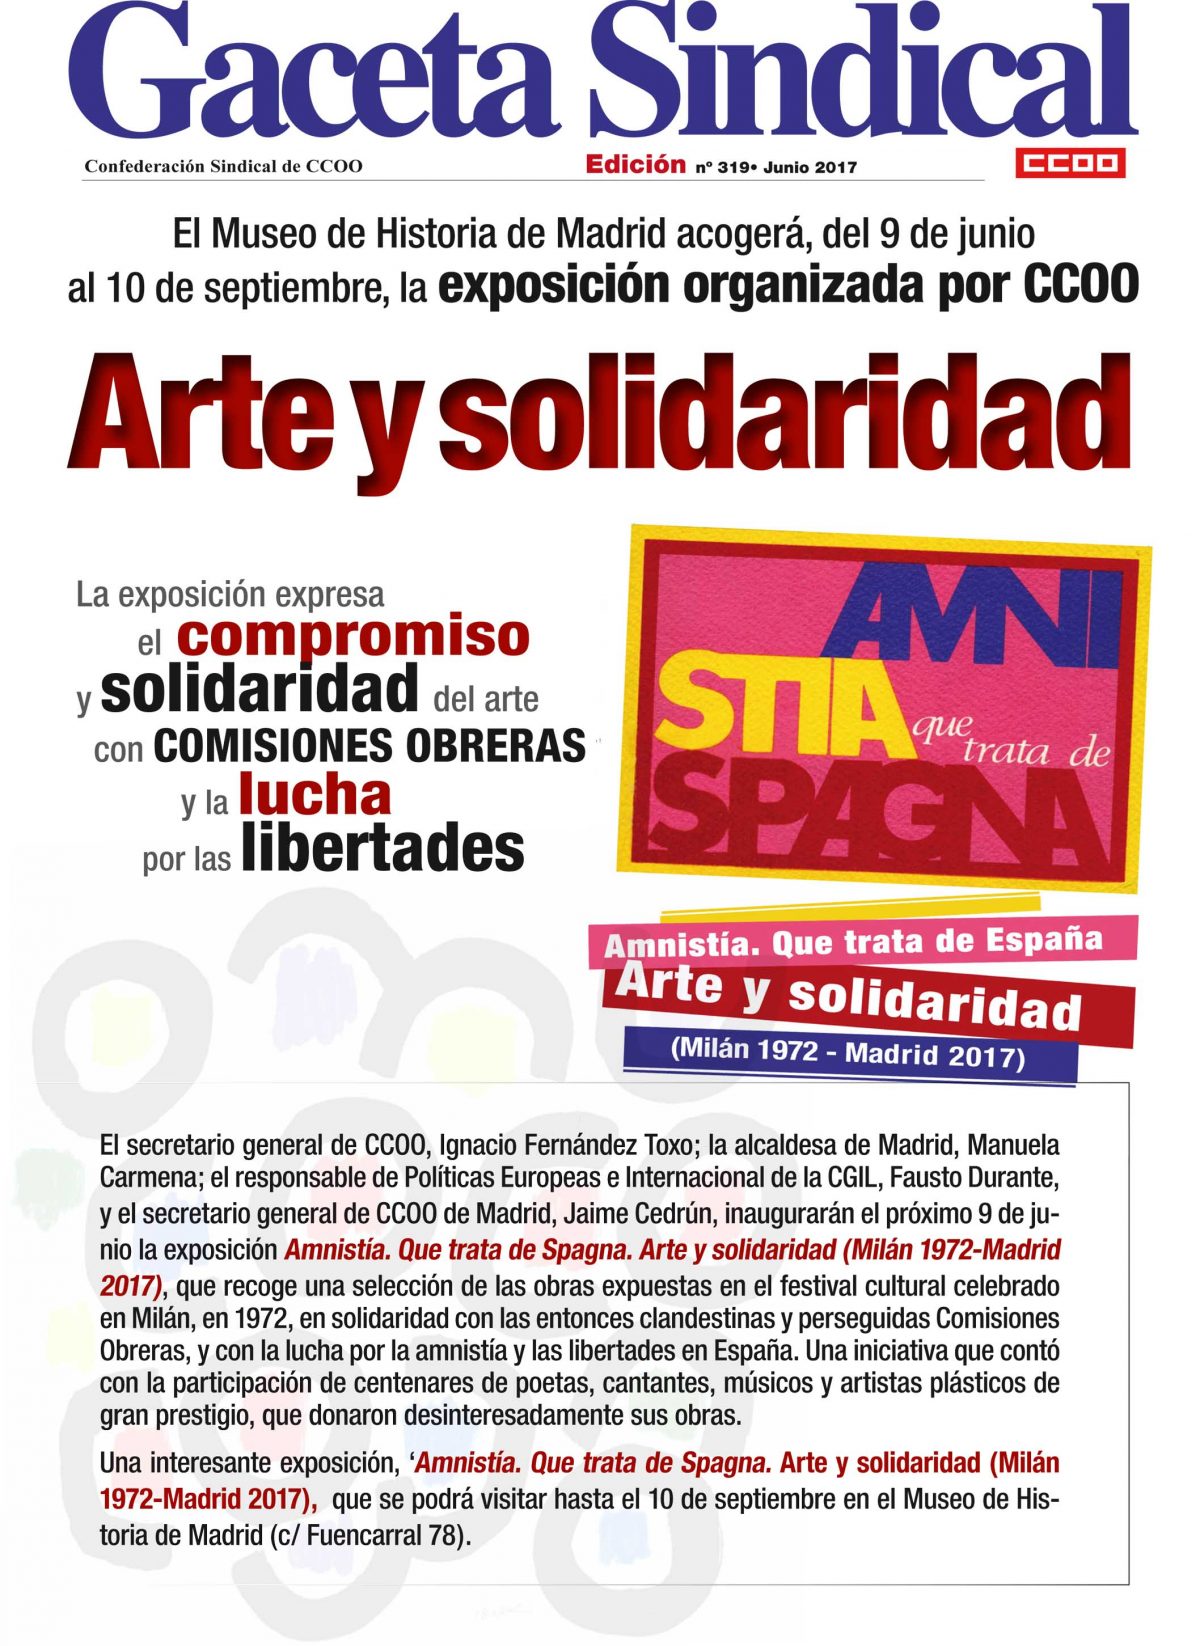 Amnistía. Que trata de Spagna. Arte y solidaridad (Milán 1972-Madrid 2017)